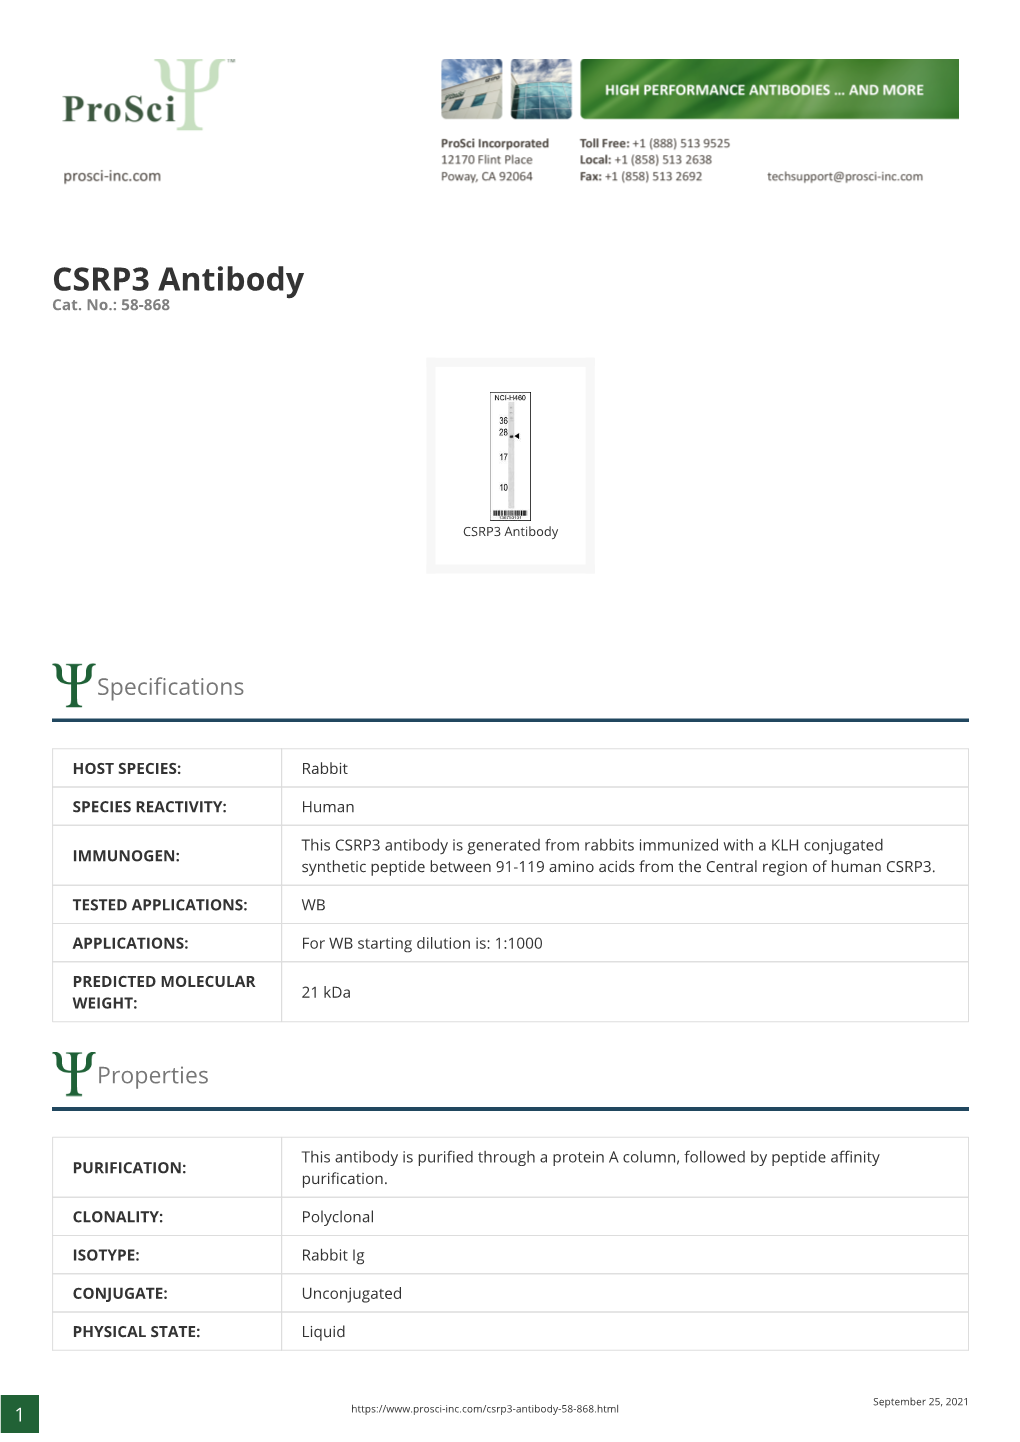 CSRP3 Antibody Cat